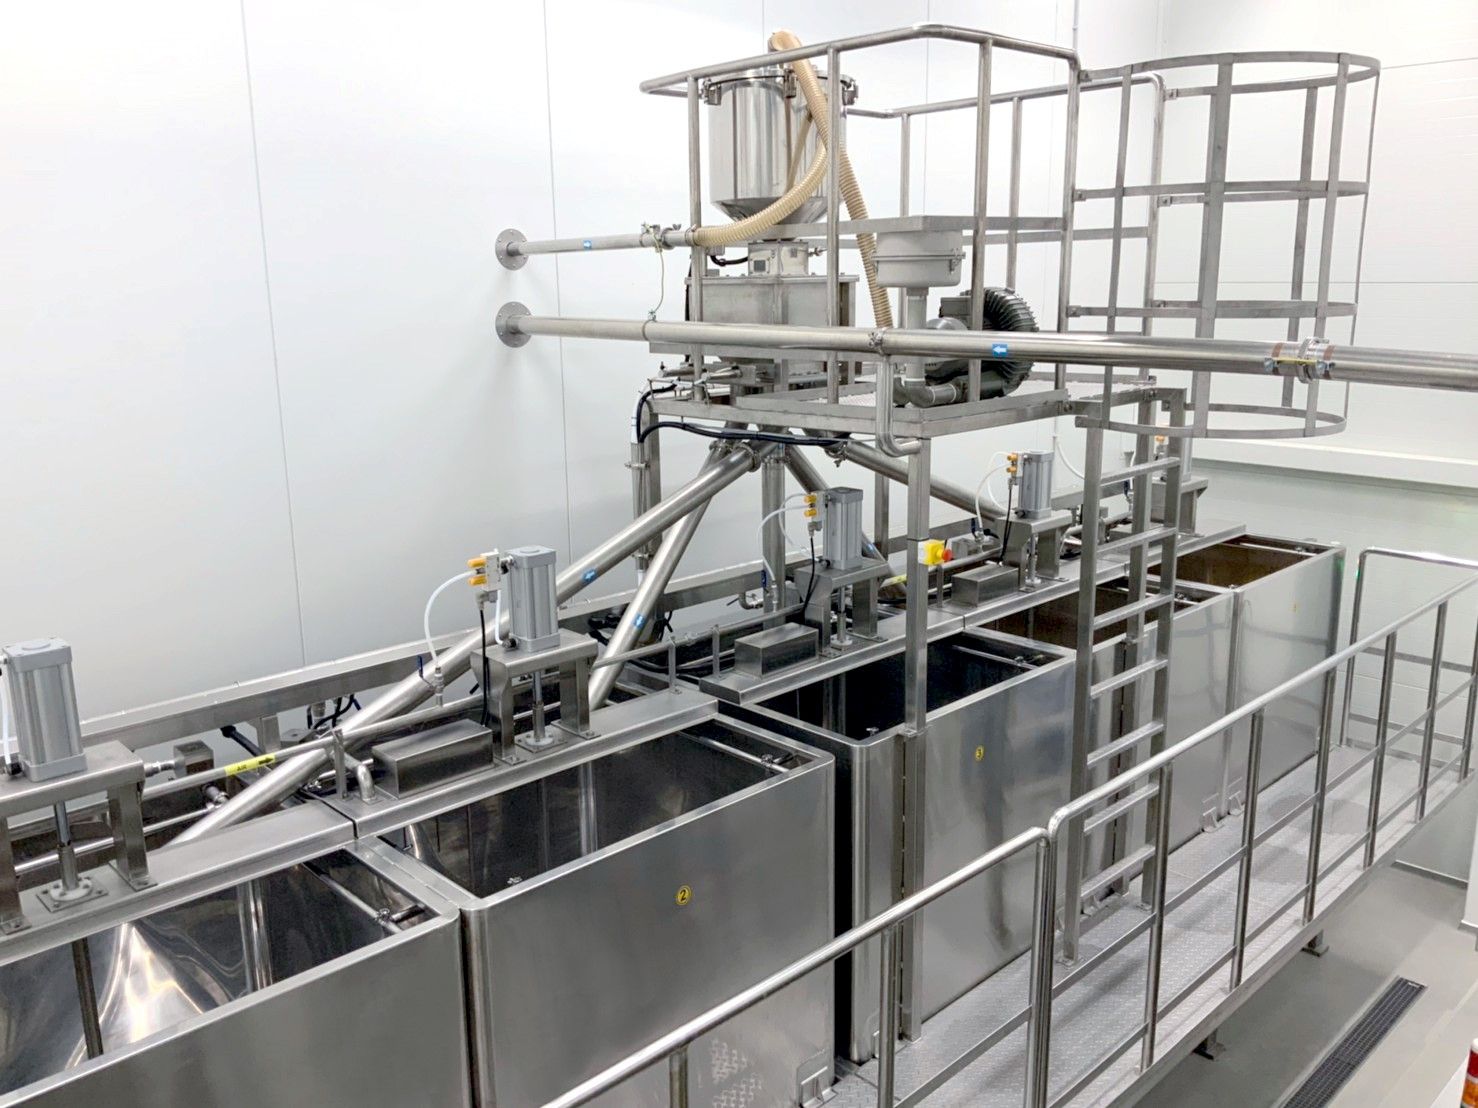 Automatyczna kontrola czasu namaczania w celu zapewnienia jakości namaczania ziaren i stabilnego stosunku namaczania ziaren, aby zapewnić stabilny wydajność ekstrakcji mleka sojowego podczas procesu ekstrakcji.